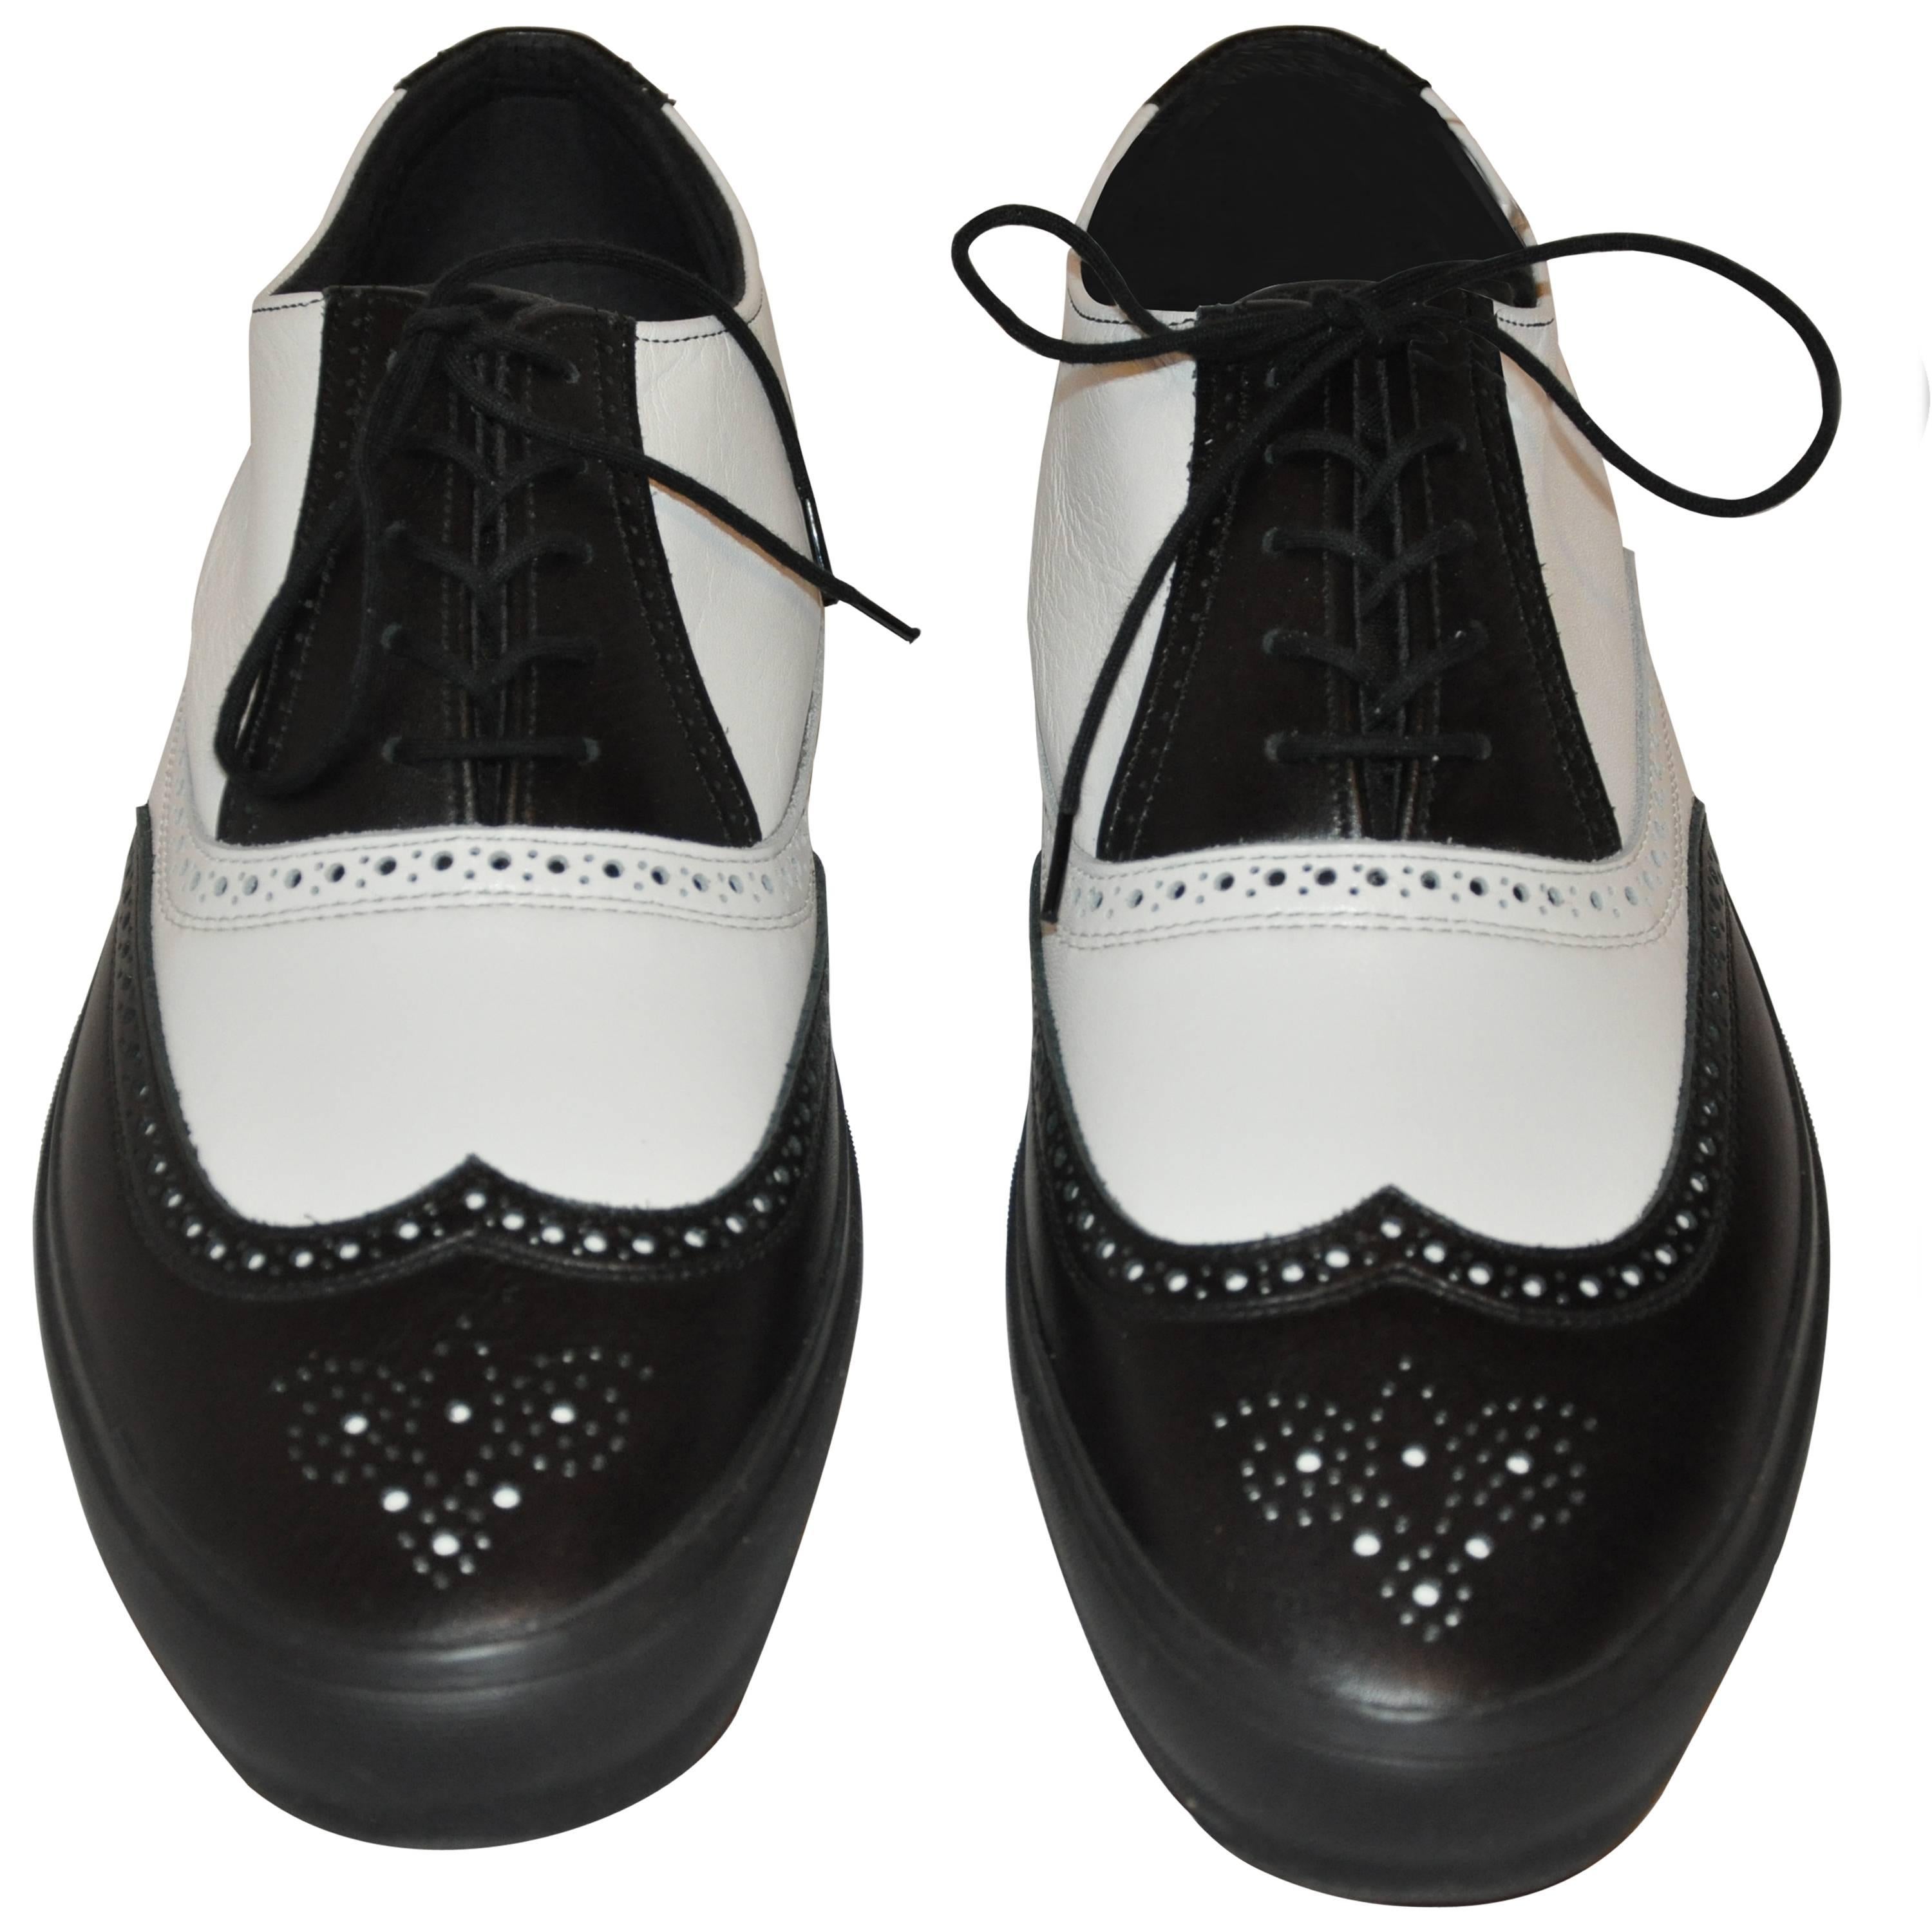 Comme des Garcons Men's Black & White "Specs" Rubber-Sole Shoes For Sale